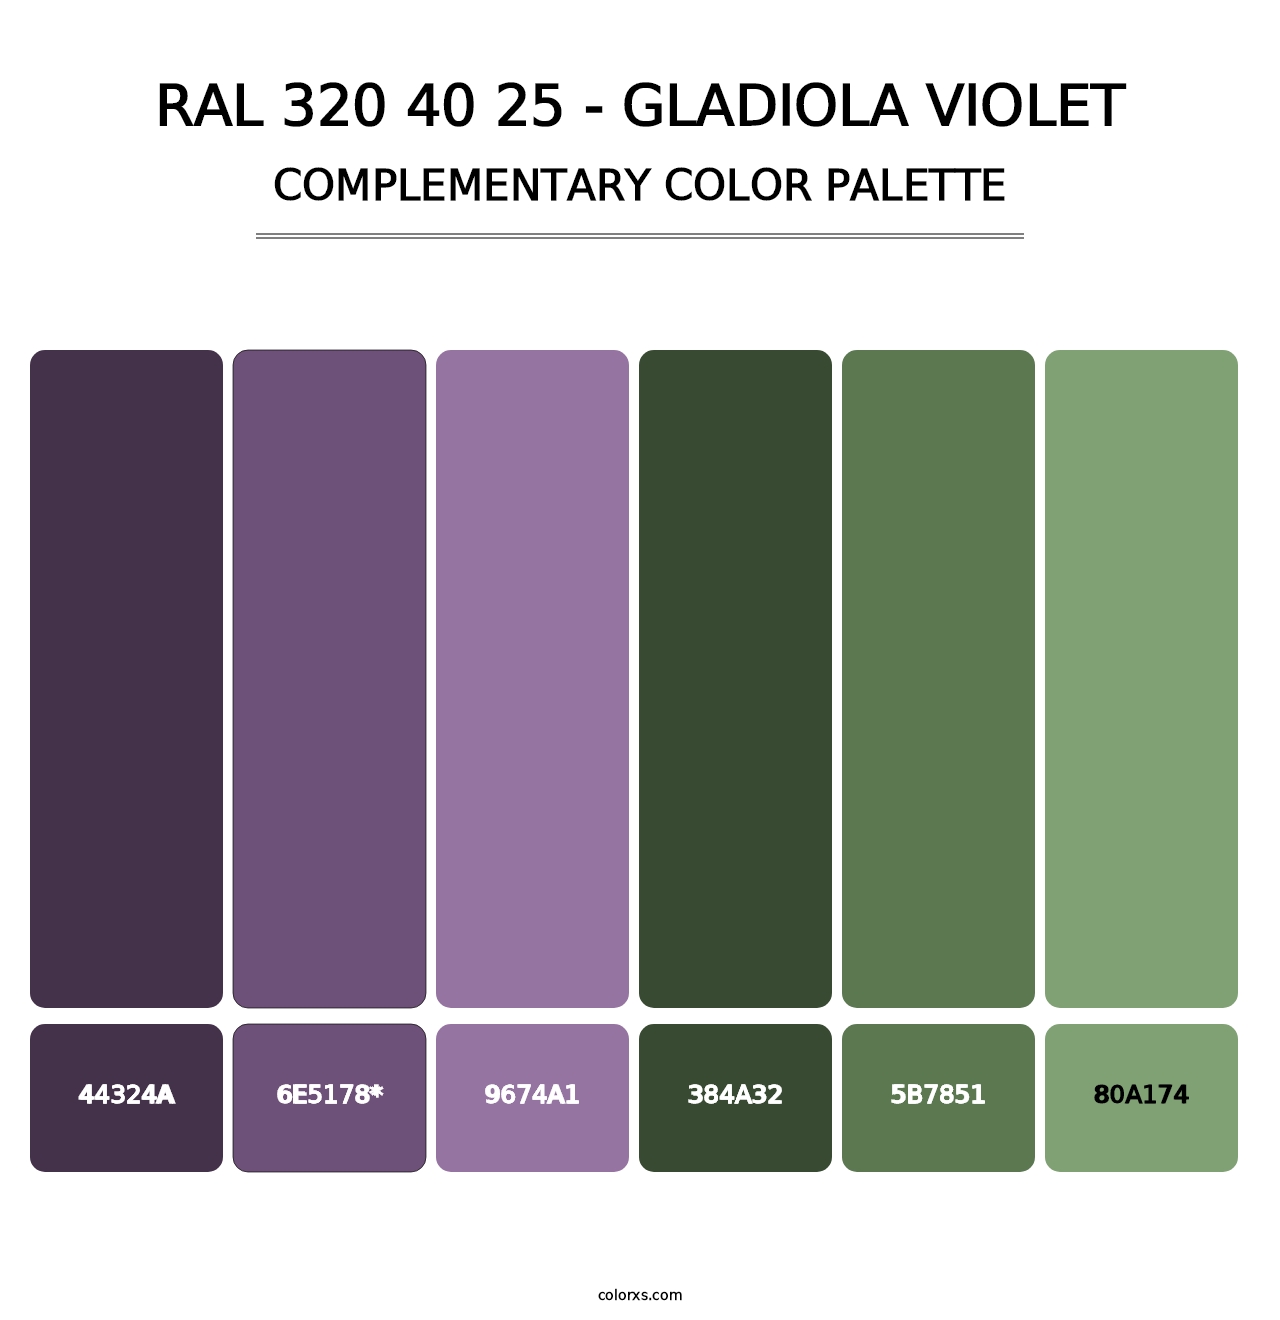 RAL 320 40 25 - Gladiola Violet - Complementary Color Palette